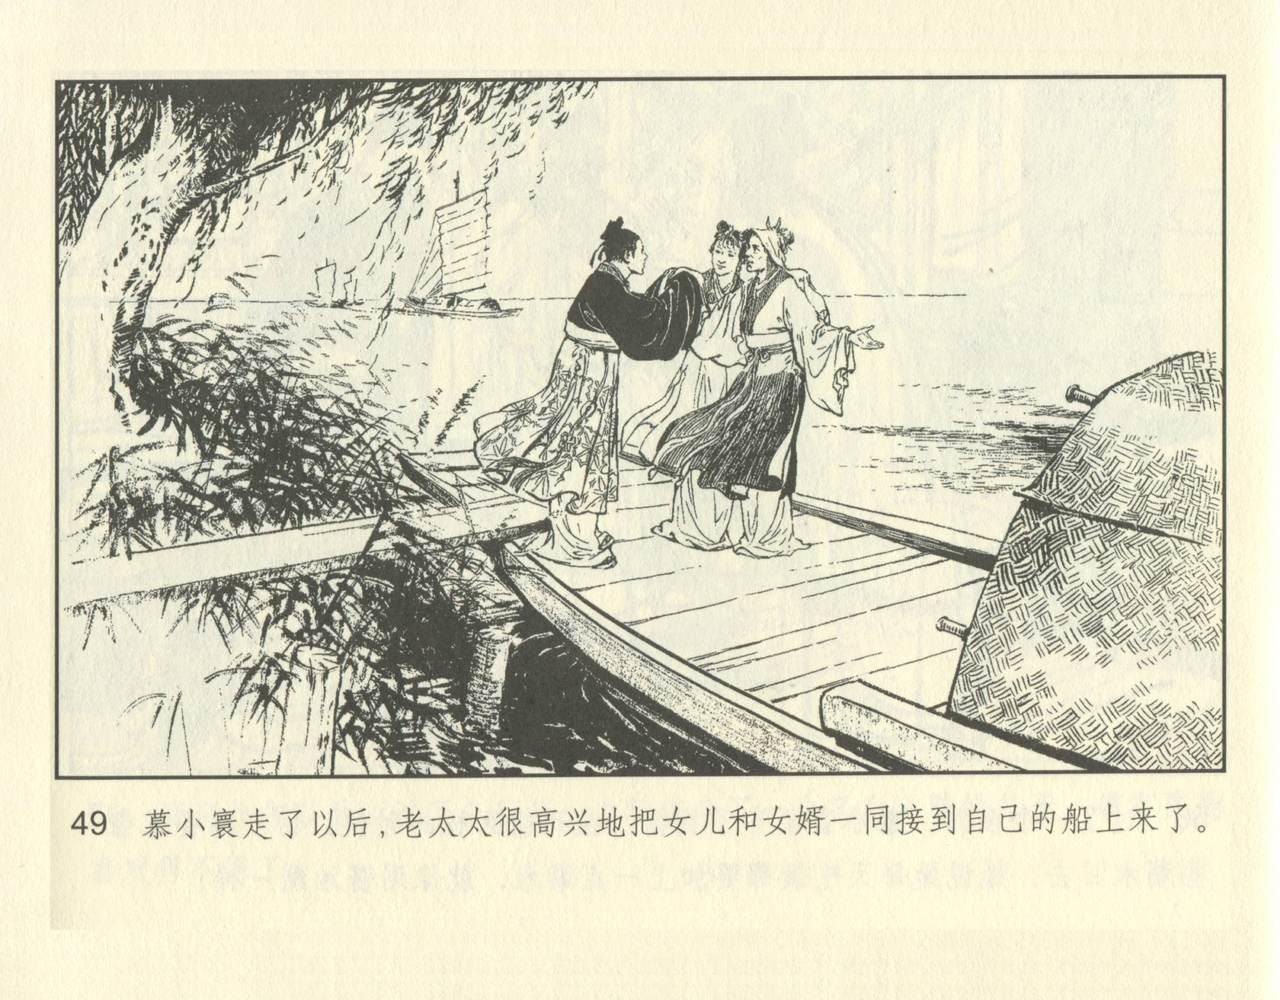 聊斋志异 张玮等绘 天津人民美术出版社 卷二十一 ~ 三十 98